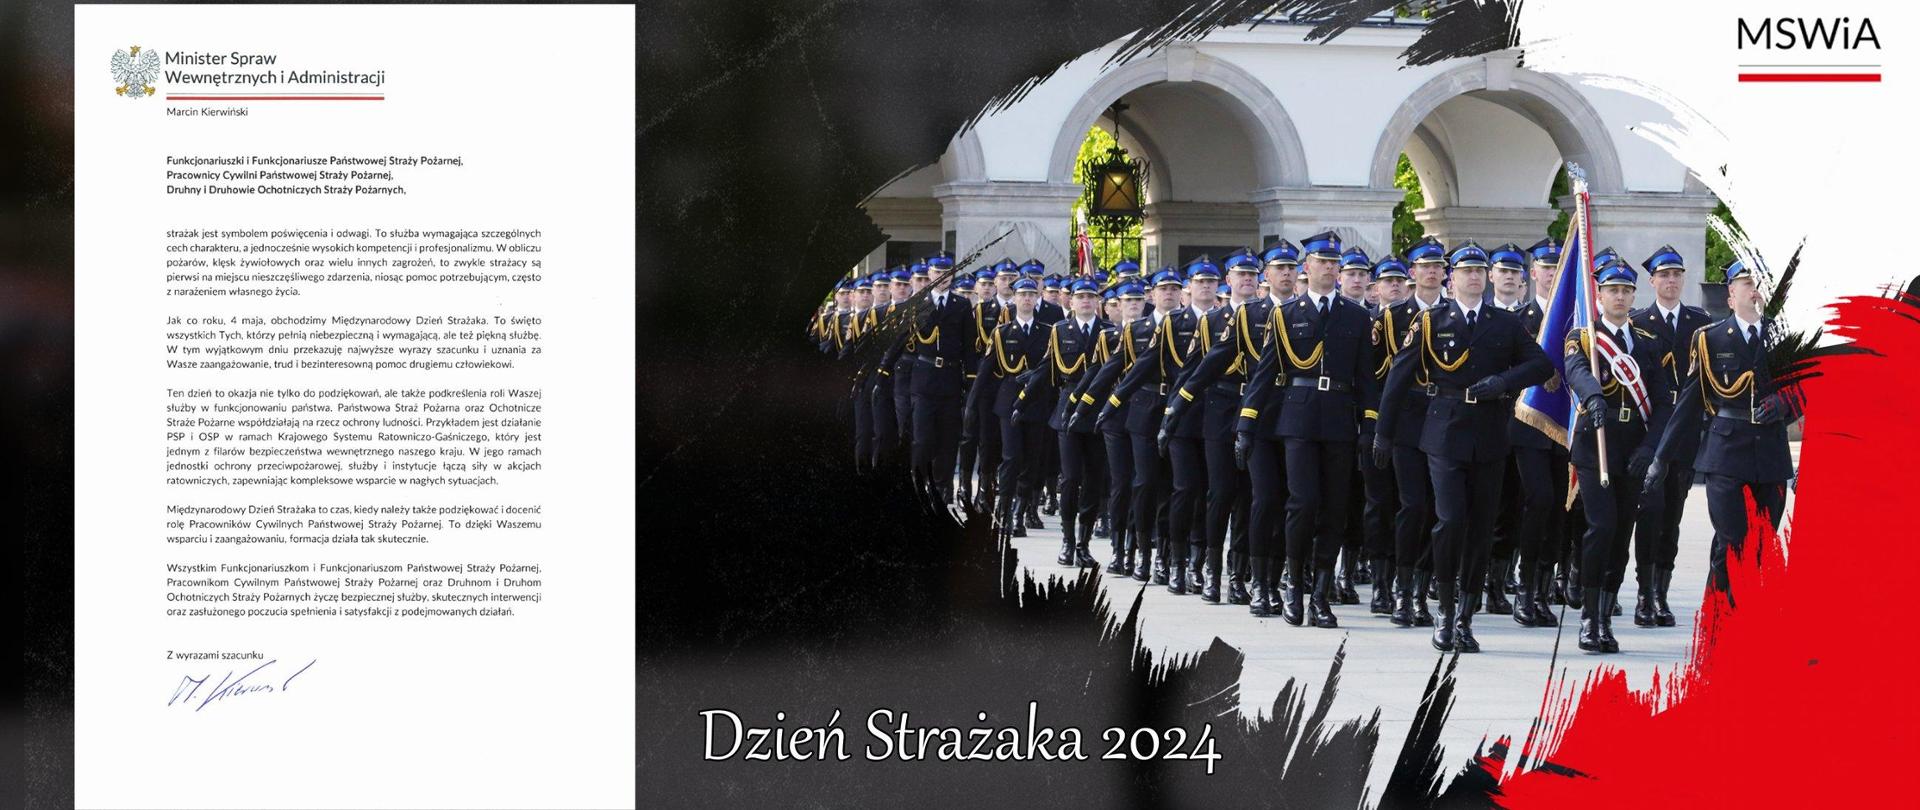 Grafika zawiera życzenia Ministra Spraw Wewnętrznych i Administracji z okazji Dnia Strażaka. Po prawej zdjęcie pododdziału strażackiego, w tle Grób NIeznanego Żołnierza, a po lewej treść życzeń.